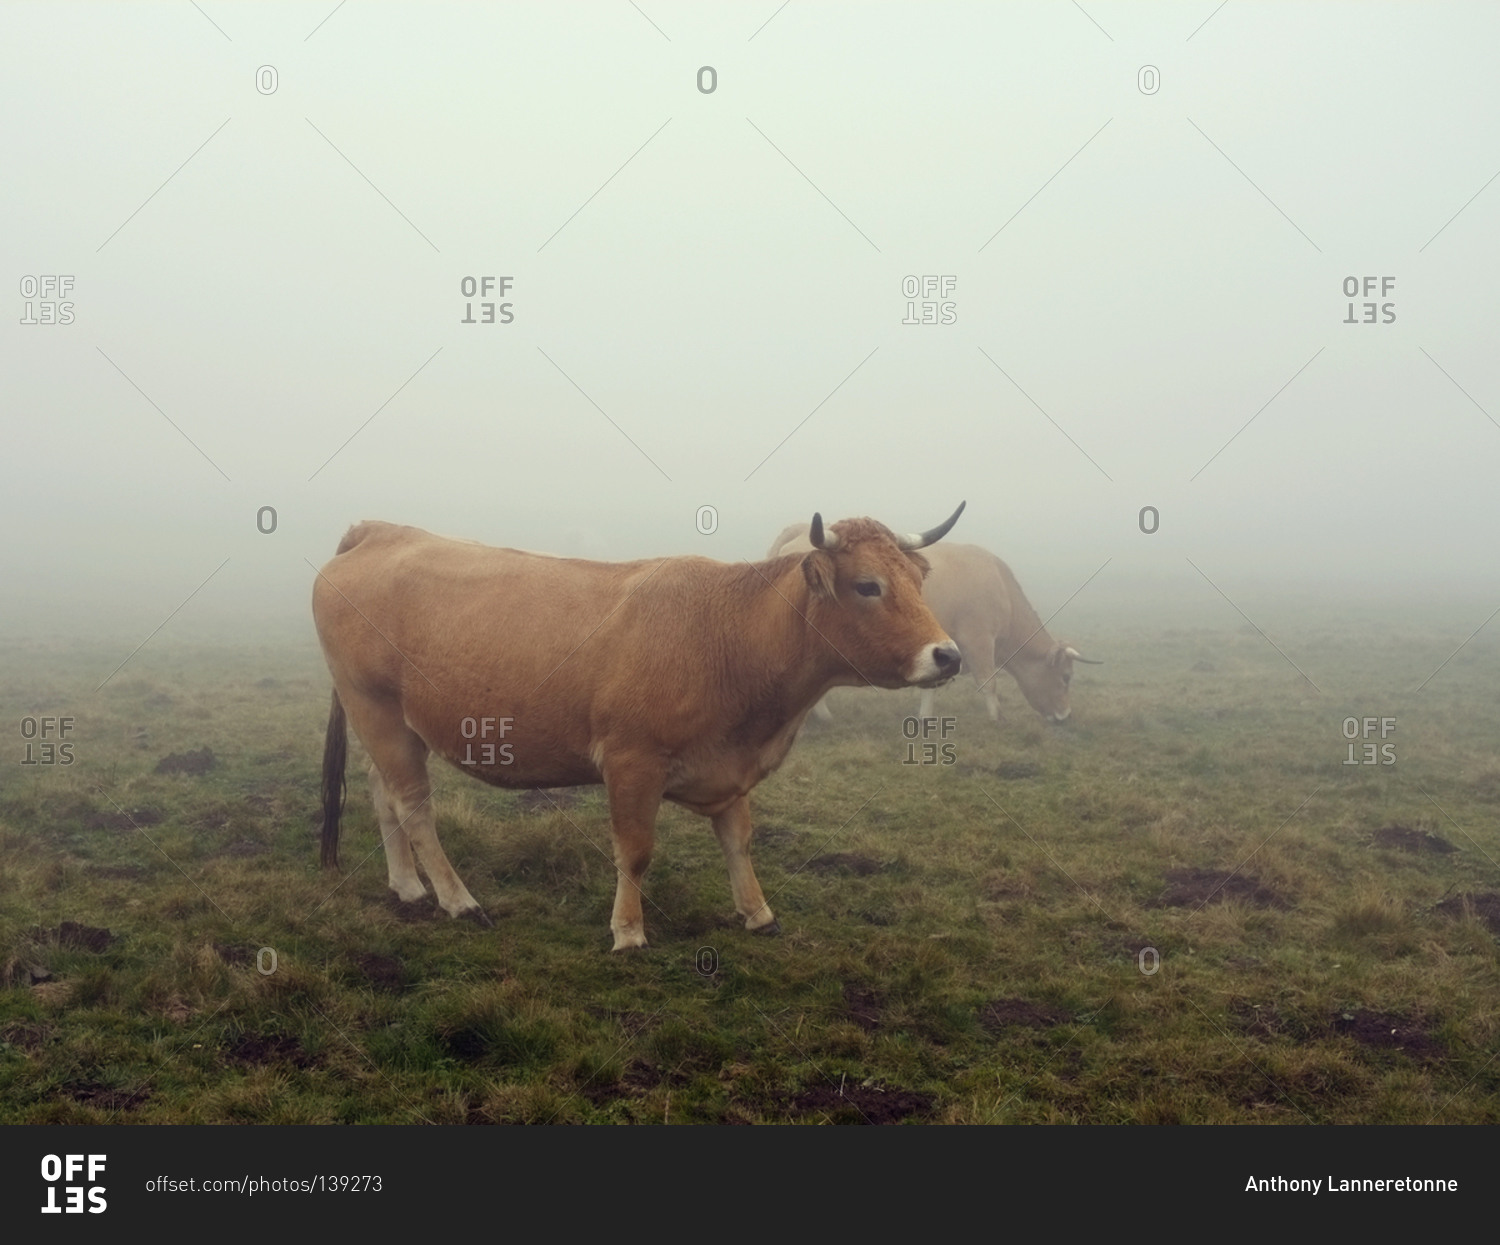 Aubrac cattle grazing in a foggy field in Aveyron, France